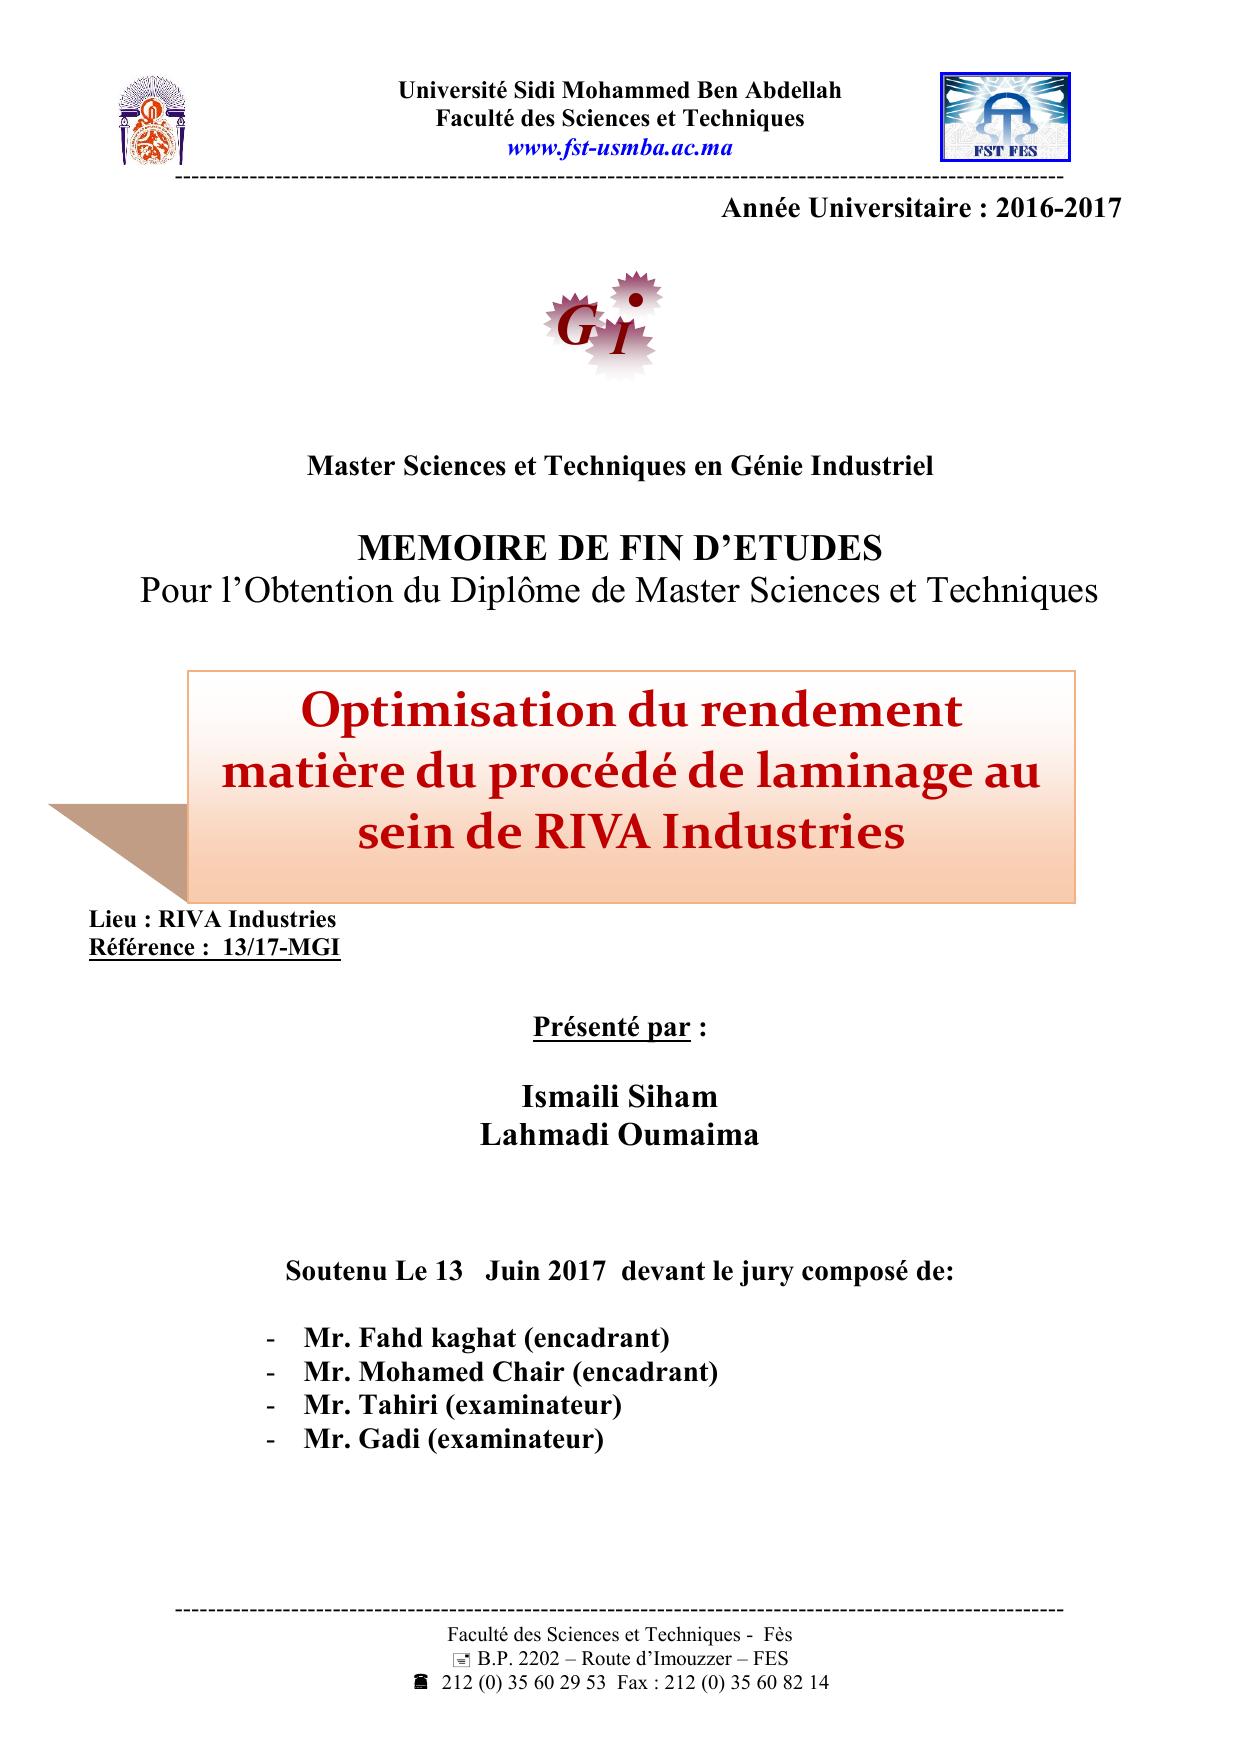 Optimisation du rendement matière du procédé de laminage au sein de RIVA Industries